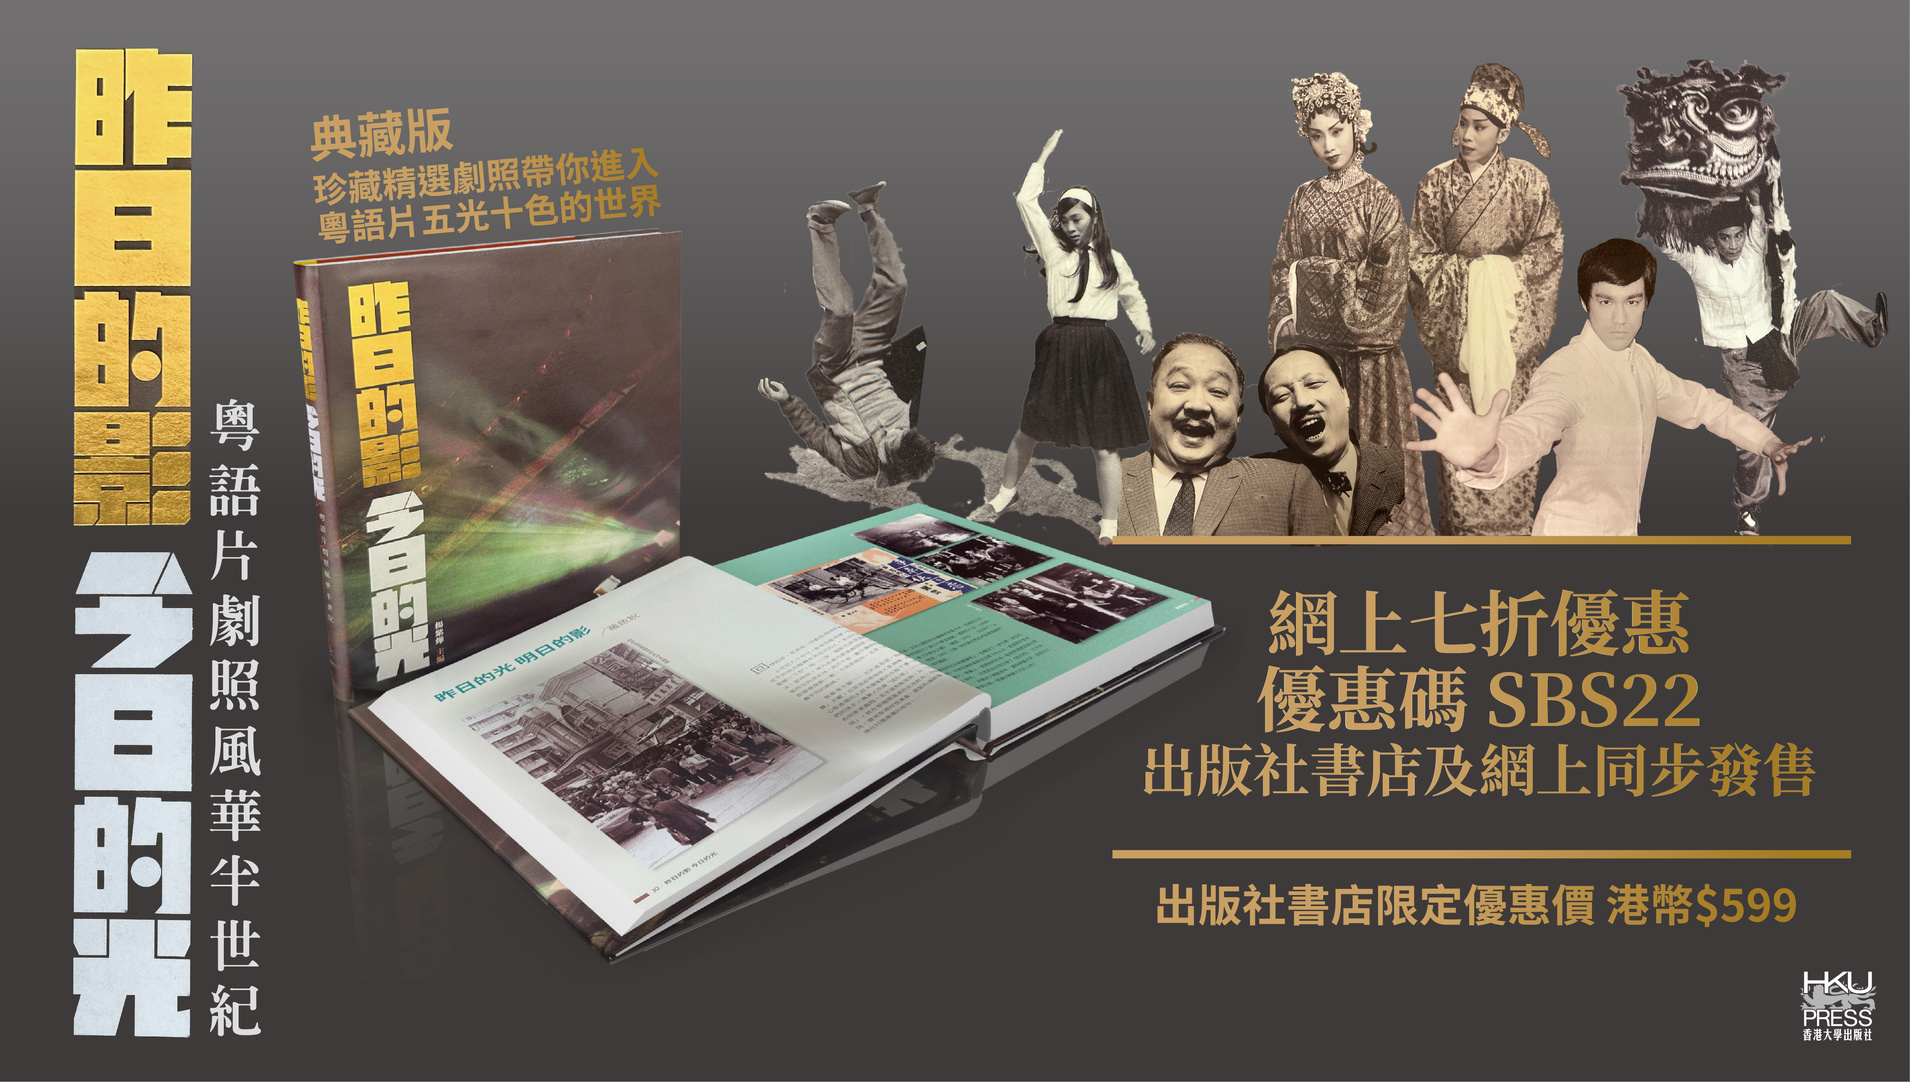 HKU Press Special Promotion